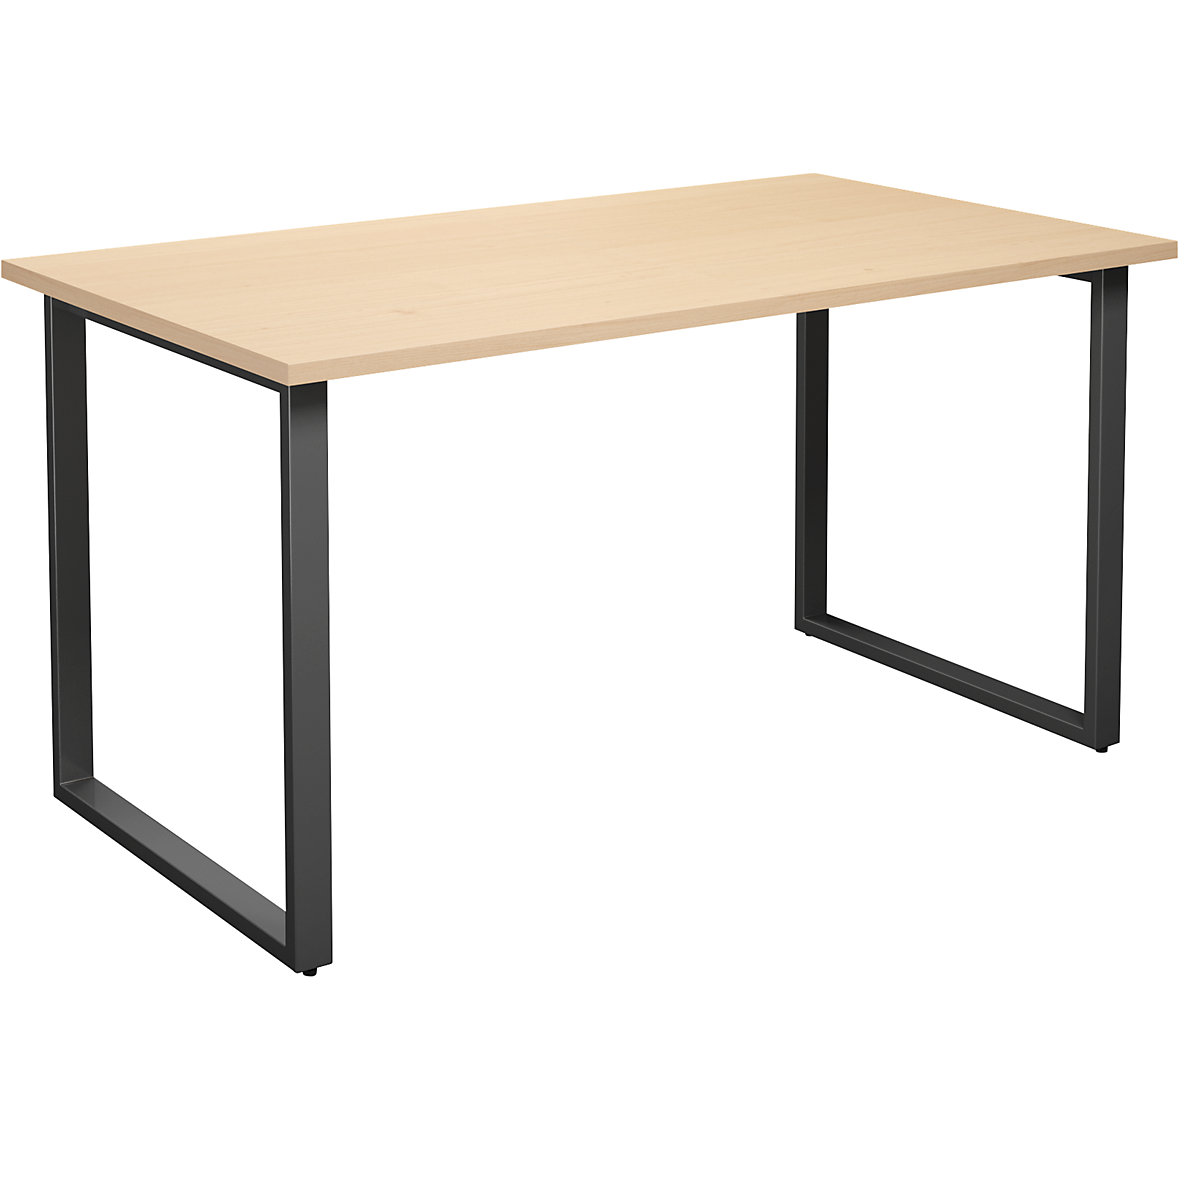 DUO-O multi-purpose desk, straight tabletop, WxD 1400 x 800 mm, birch, black-10